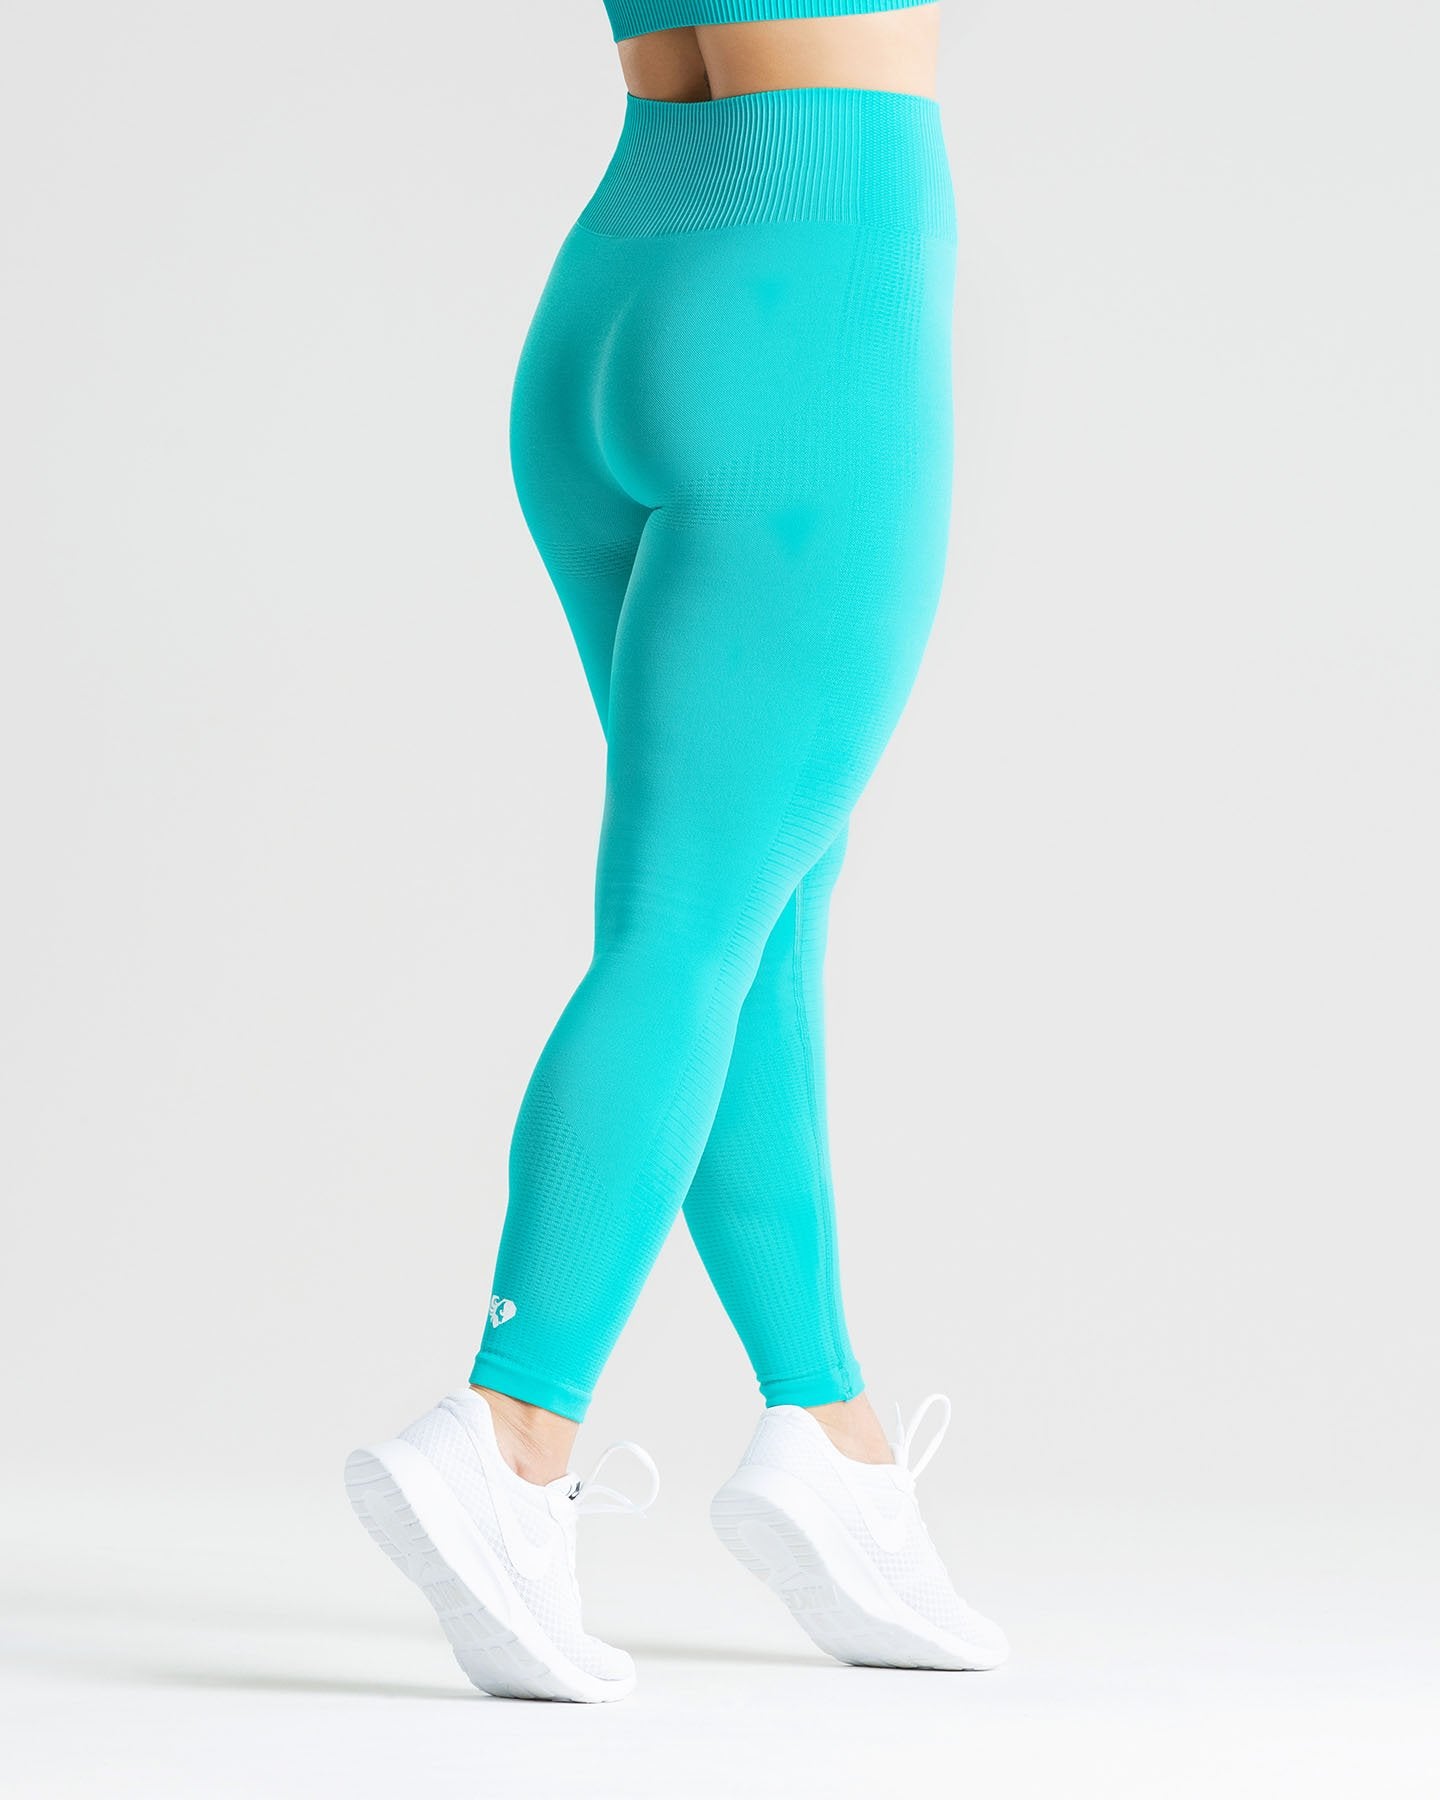 CG by Champion Blue/Black Leggings Yoga Workout Pants Women's S 6-6X 28W X  25L